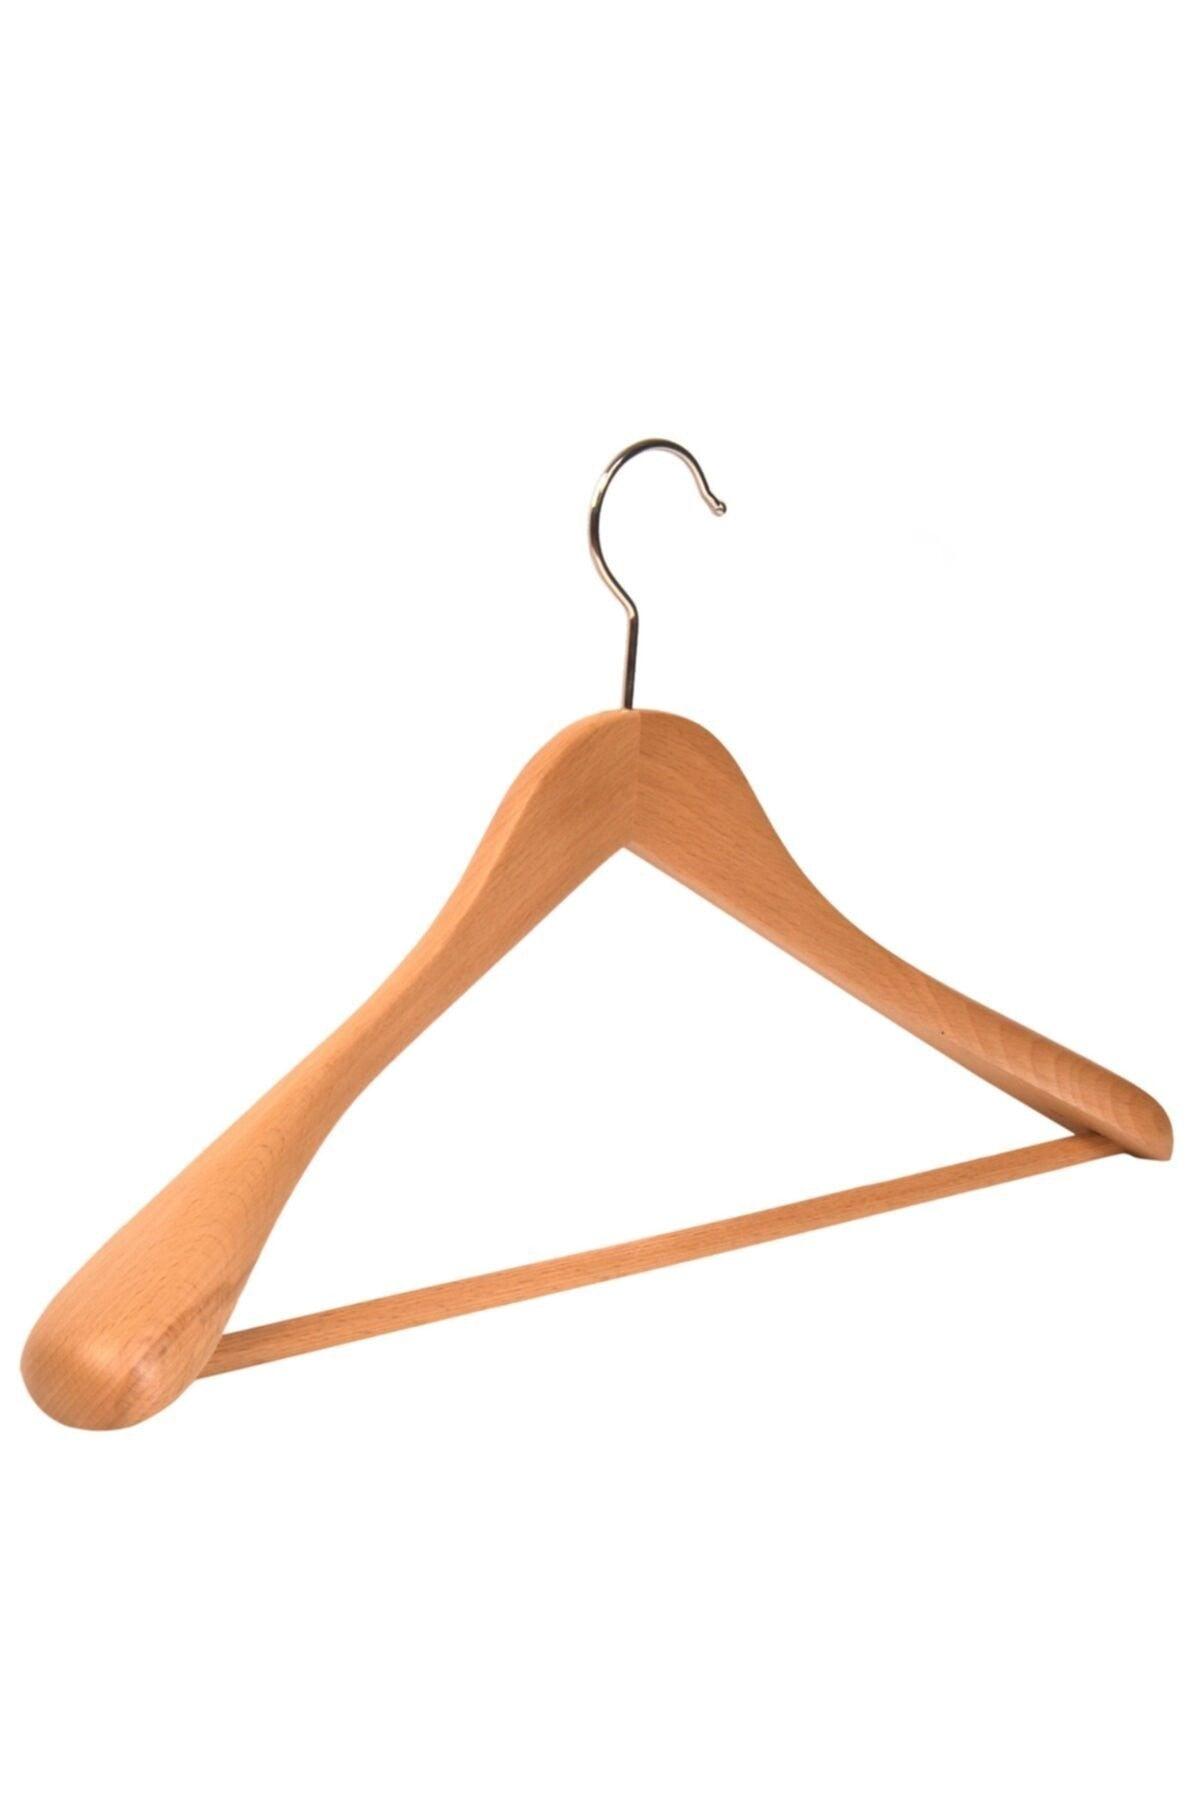 Wooden Hanger Thick Shoulder Formed Suit Jacket Hanger Natural Color 50 Pcs - Swordslife